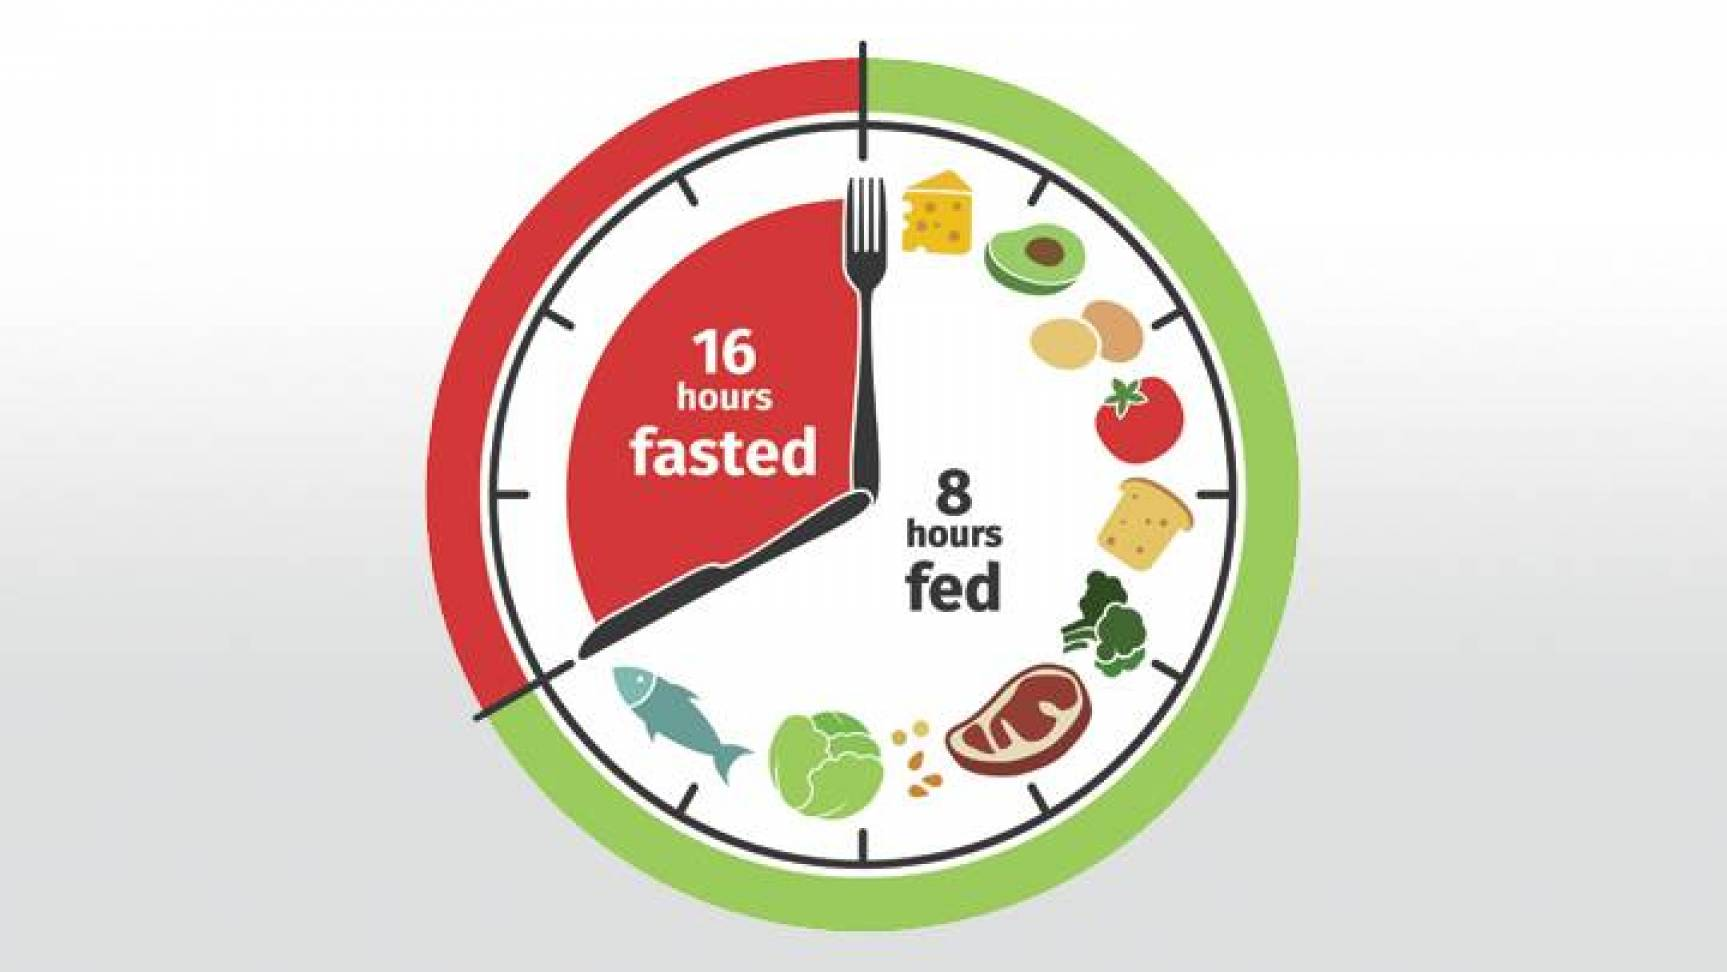 كيف نعلم ما هو الوقت المُناسب للطعام وإتباع نظام الصيام المُتقطع؟ - فيديو